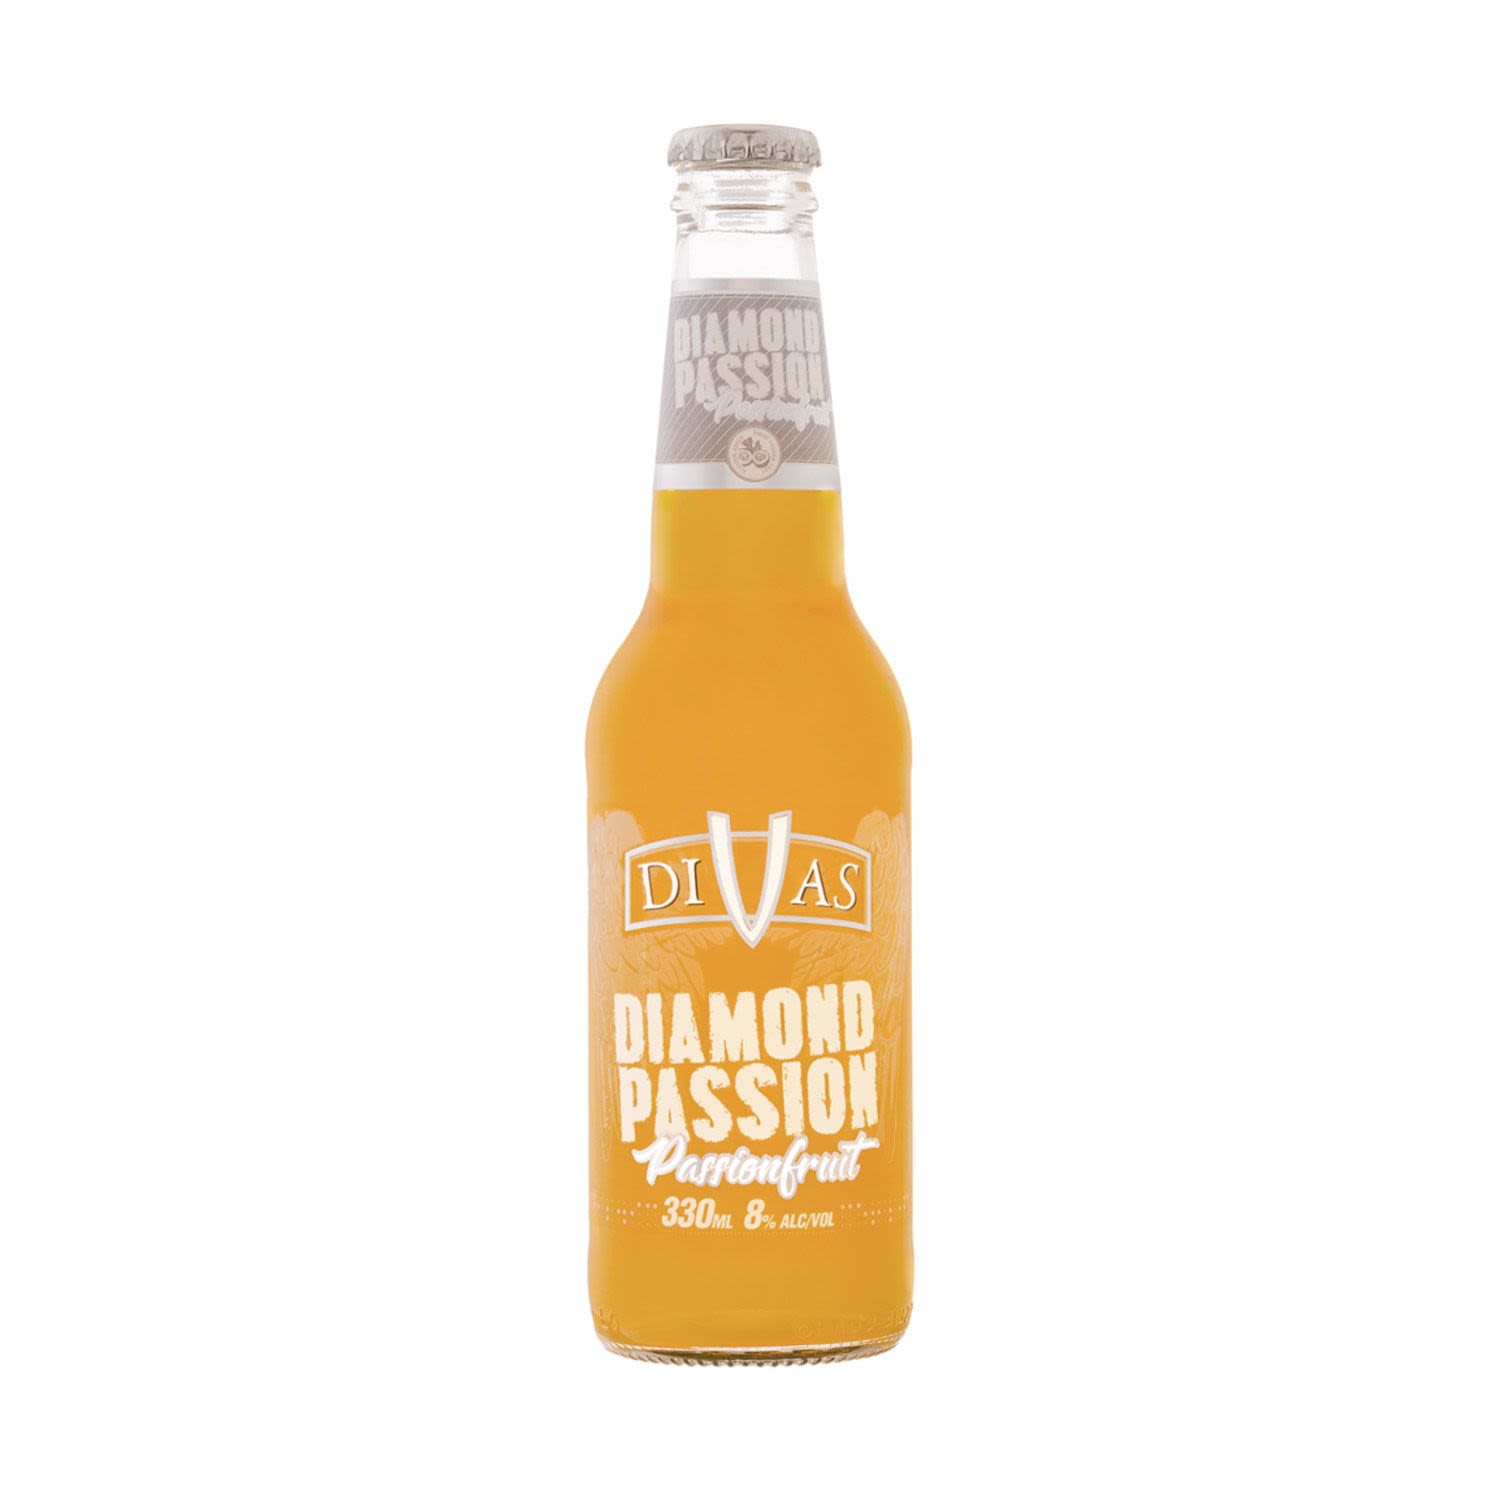 Divas Diamond Passion Passionfruit Bottle 330mL 4 Pack